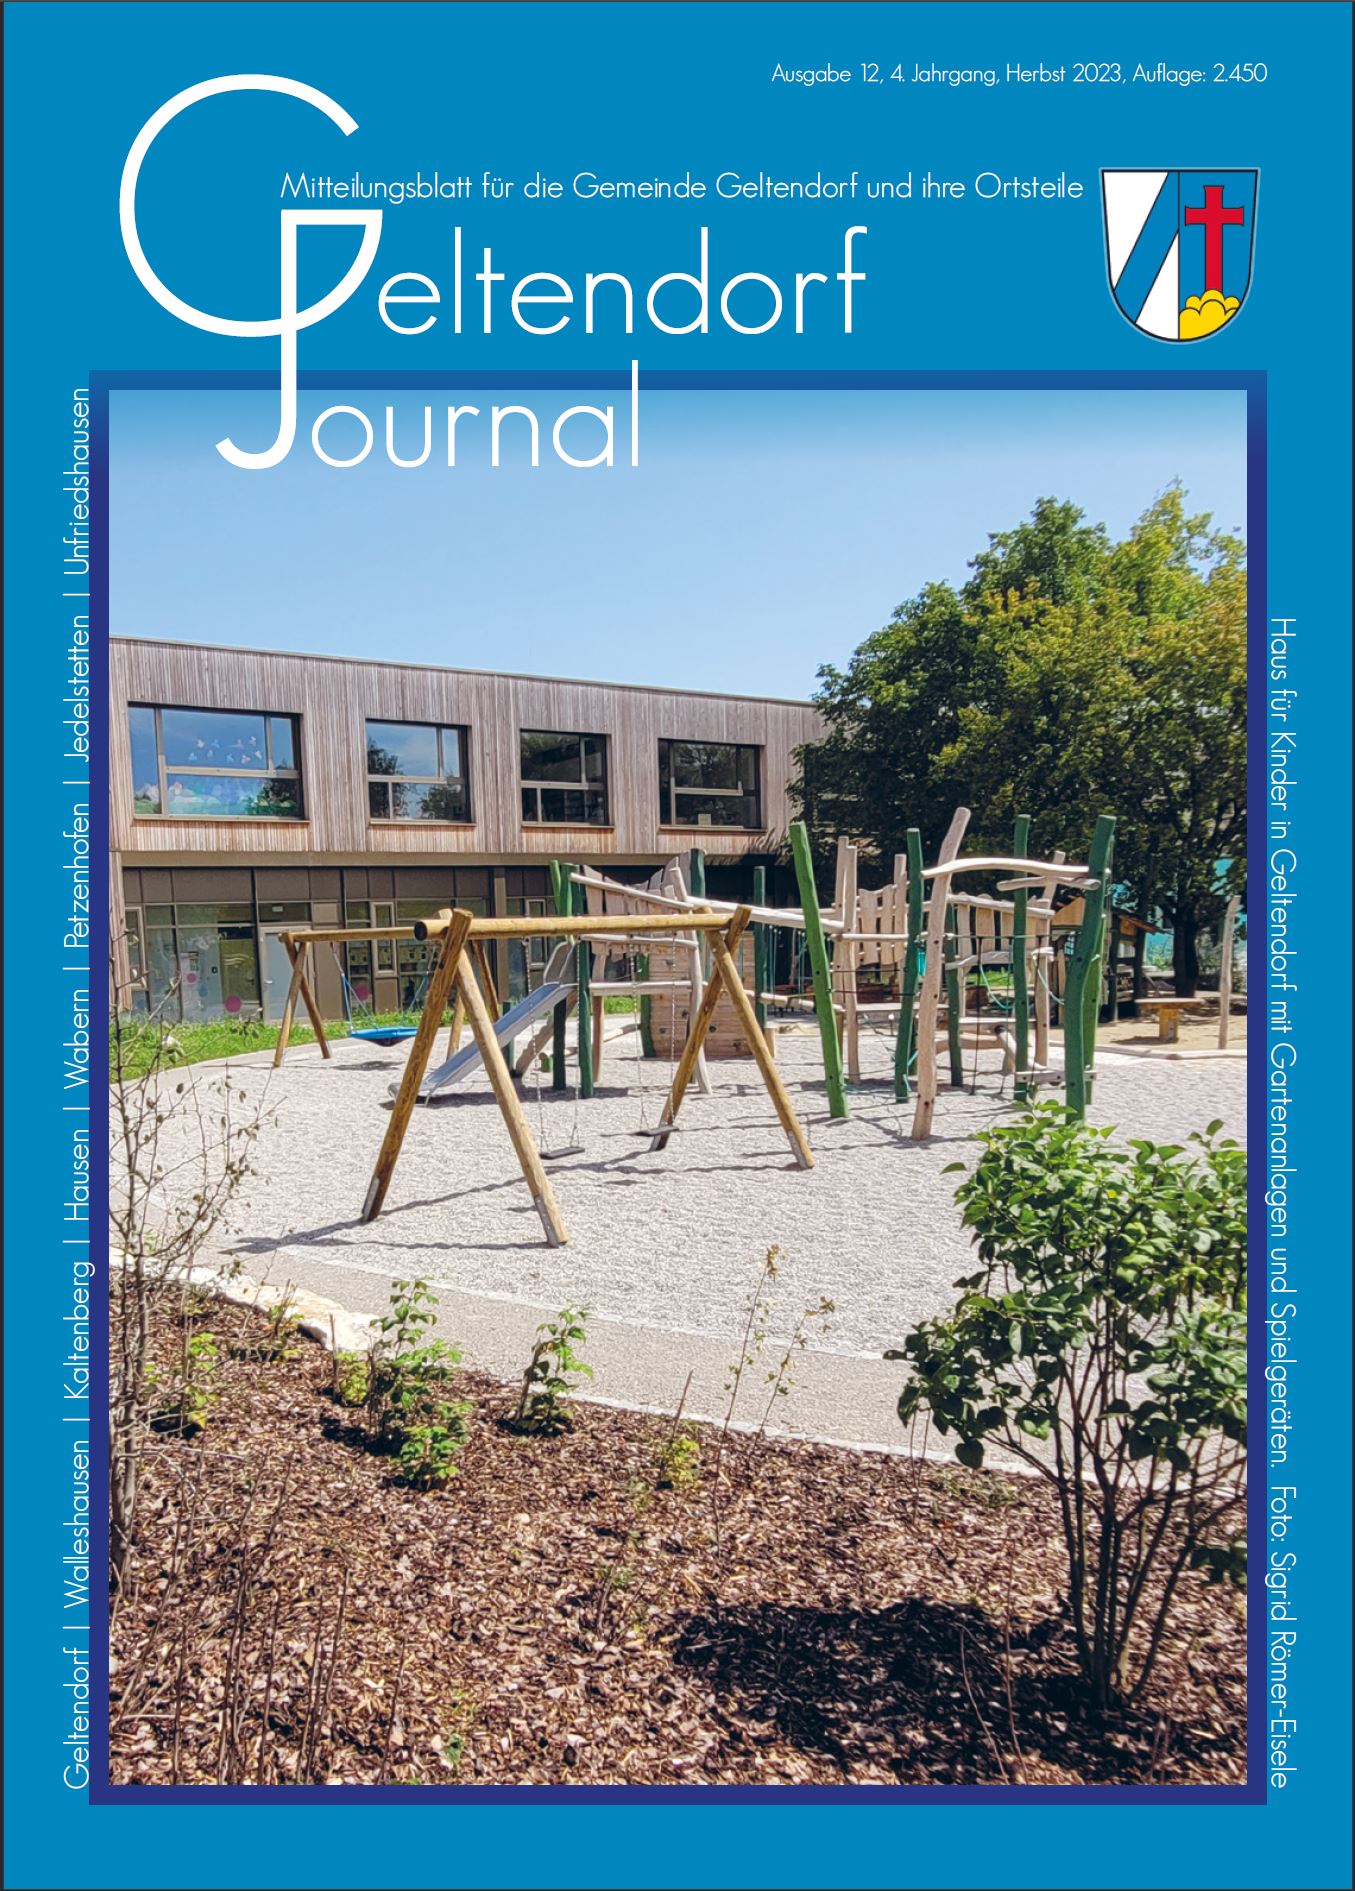 Geltendorf Journal Nr. 12 - 2023 (Herbst 2023)